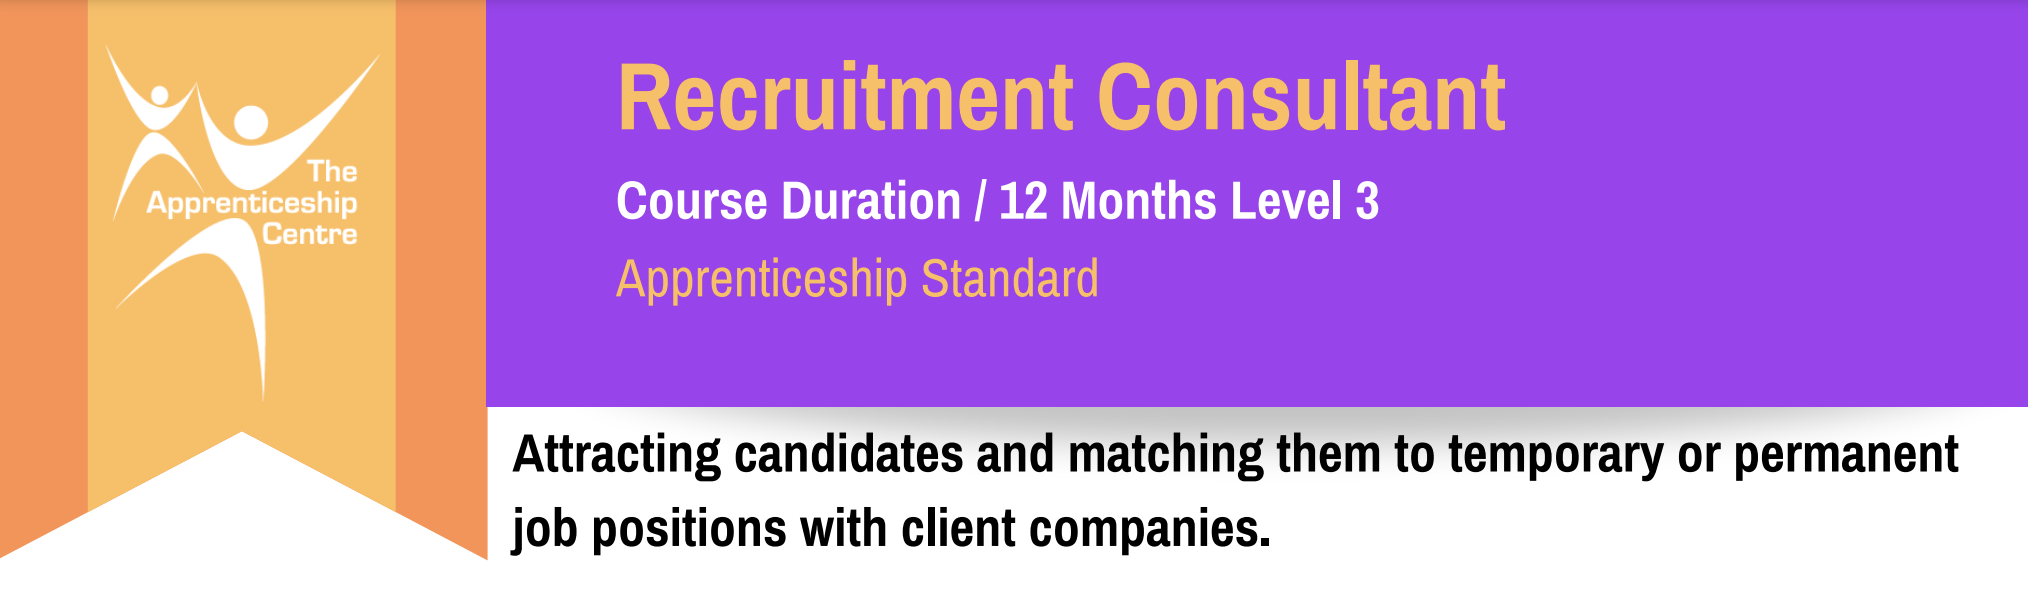 Recruitment Consultant Level 3